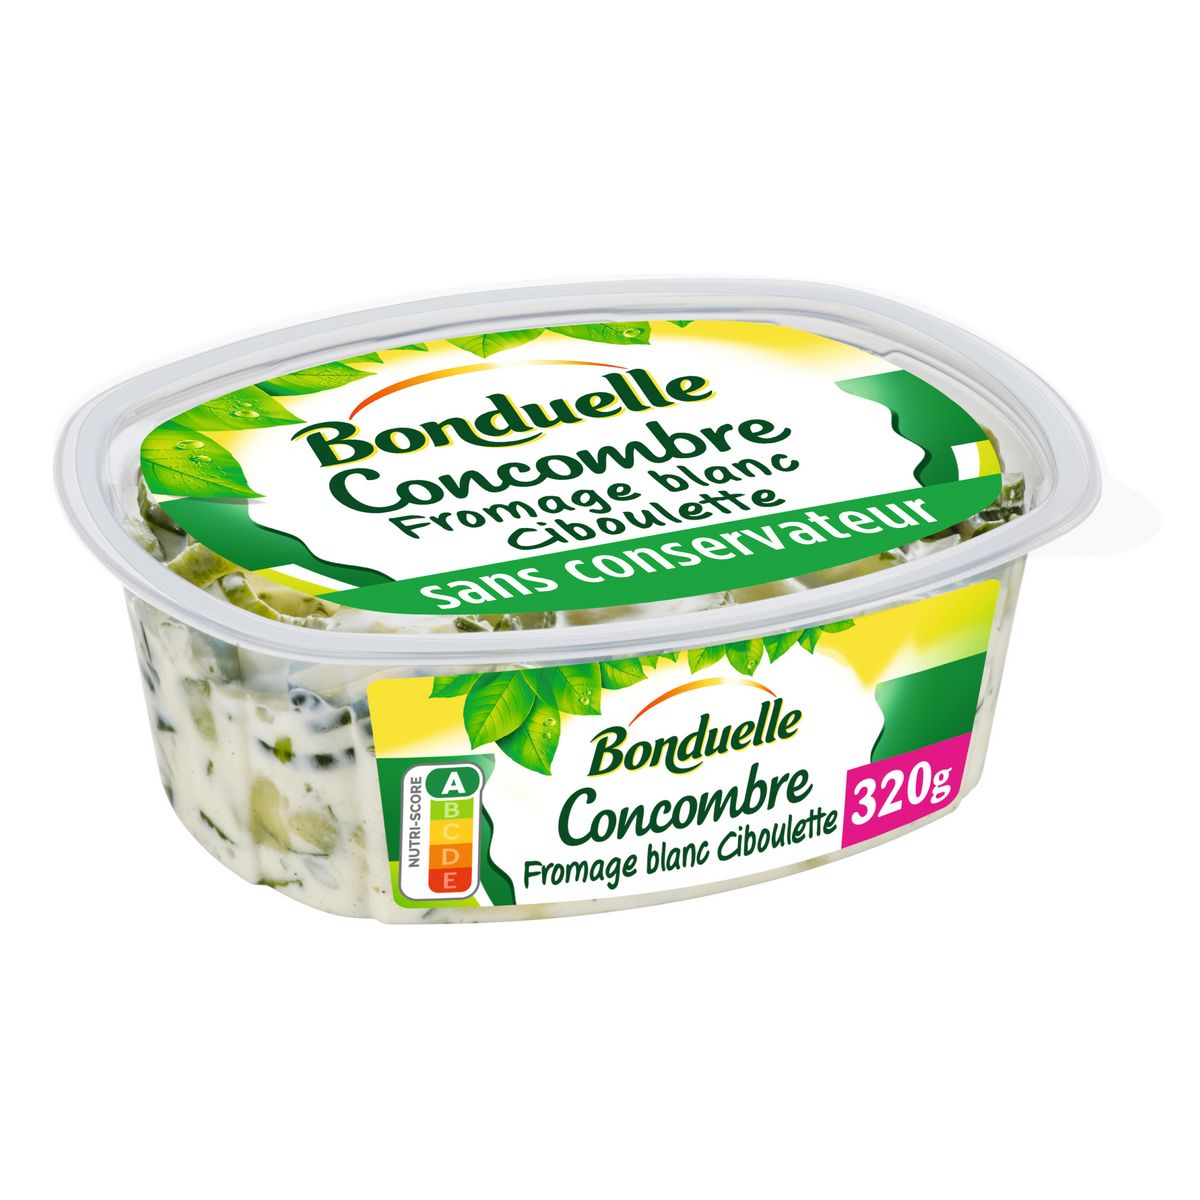 BONDUELLE Concombre au fromage blanc ciboulette 320g